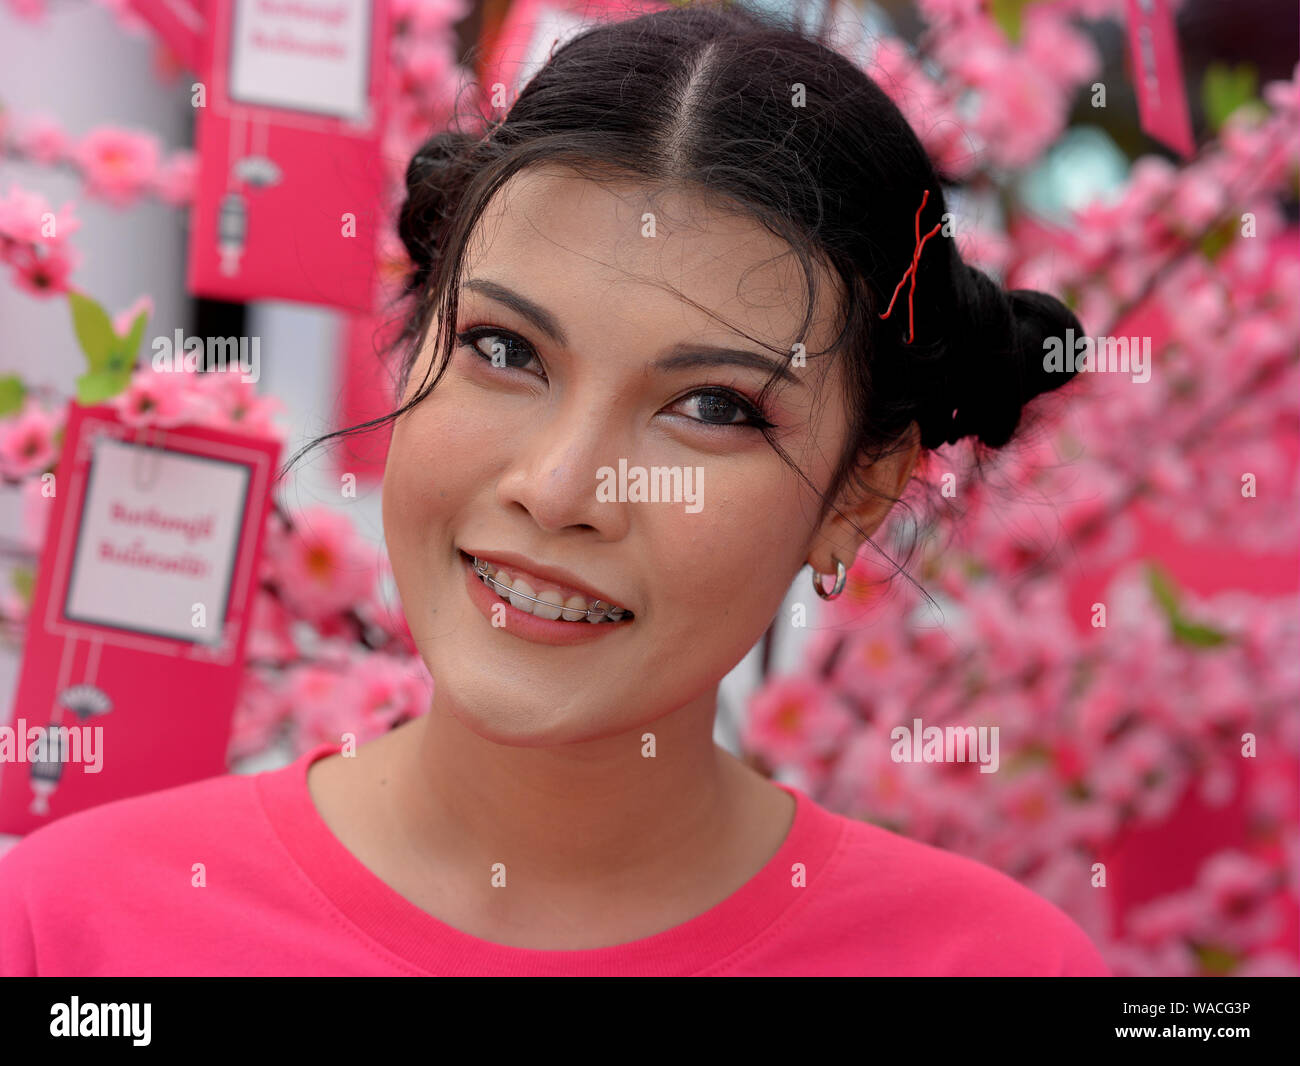 Young Thai Belleza en Rosa, posa para la cámara en frente de un árbol en flor rosa adjunto con deseos de Año Nuevo lunar en el Año Nuevo chino 2019. Foto de stock